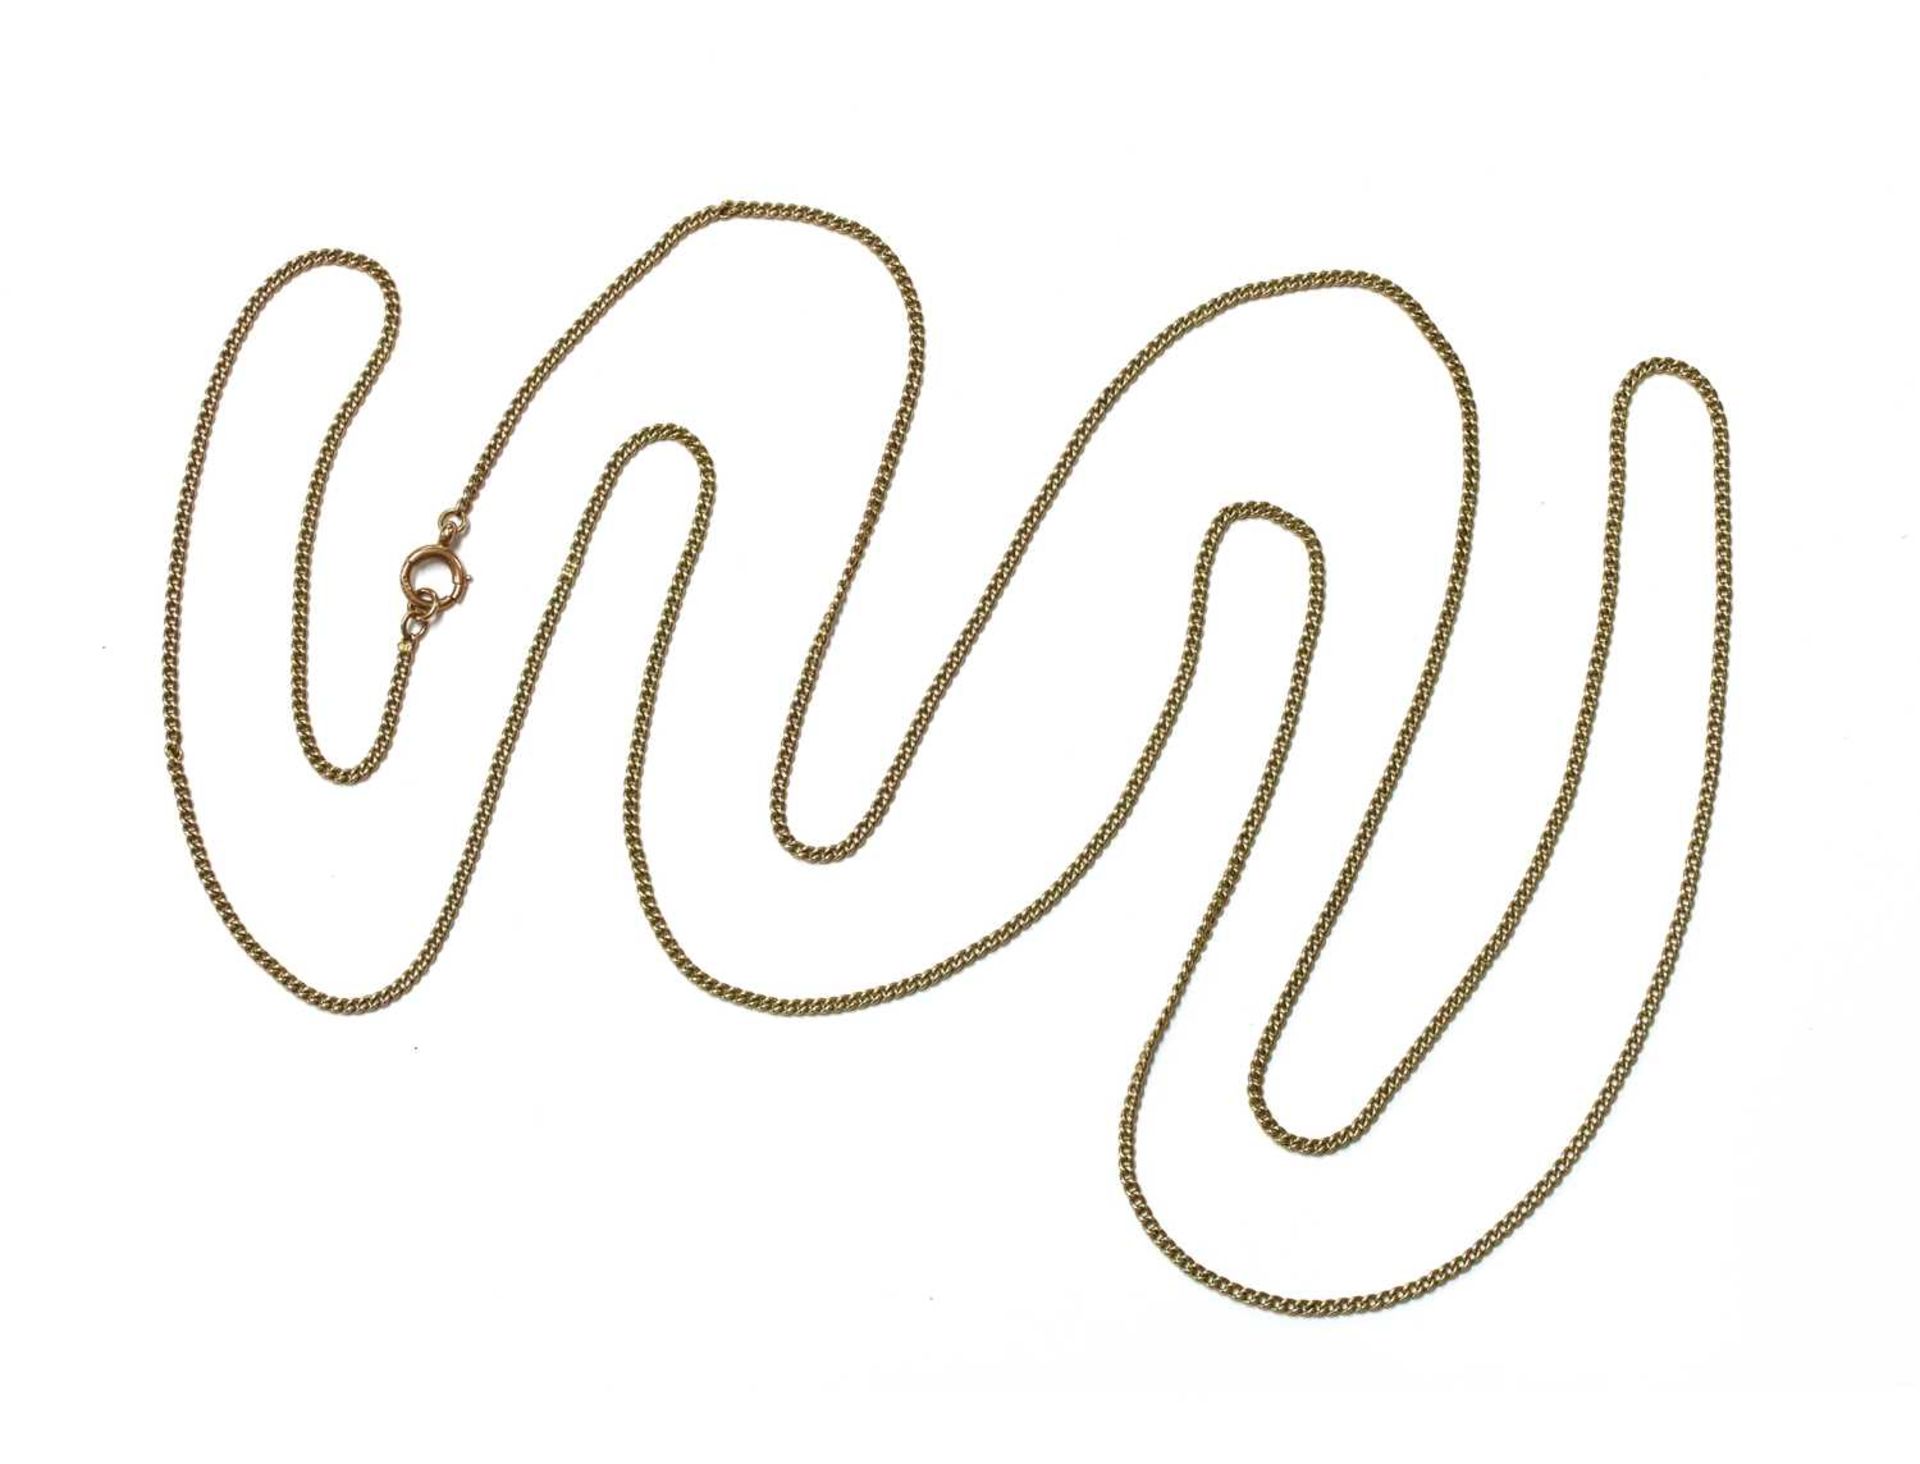 A gold curb link guard chain,